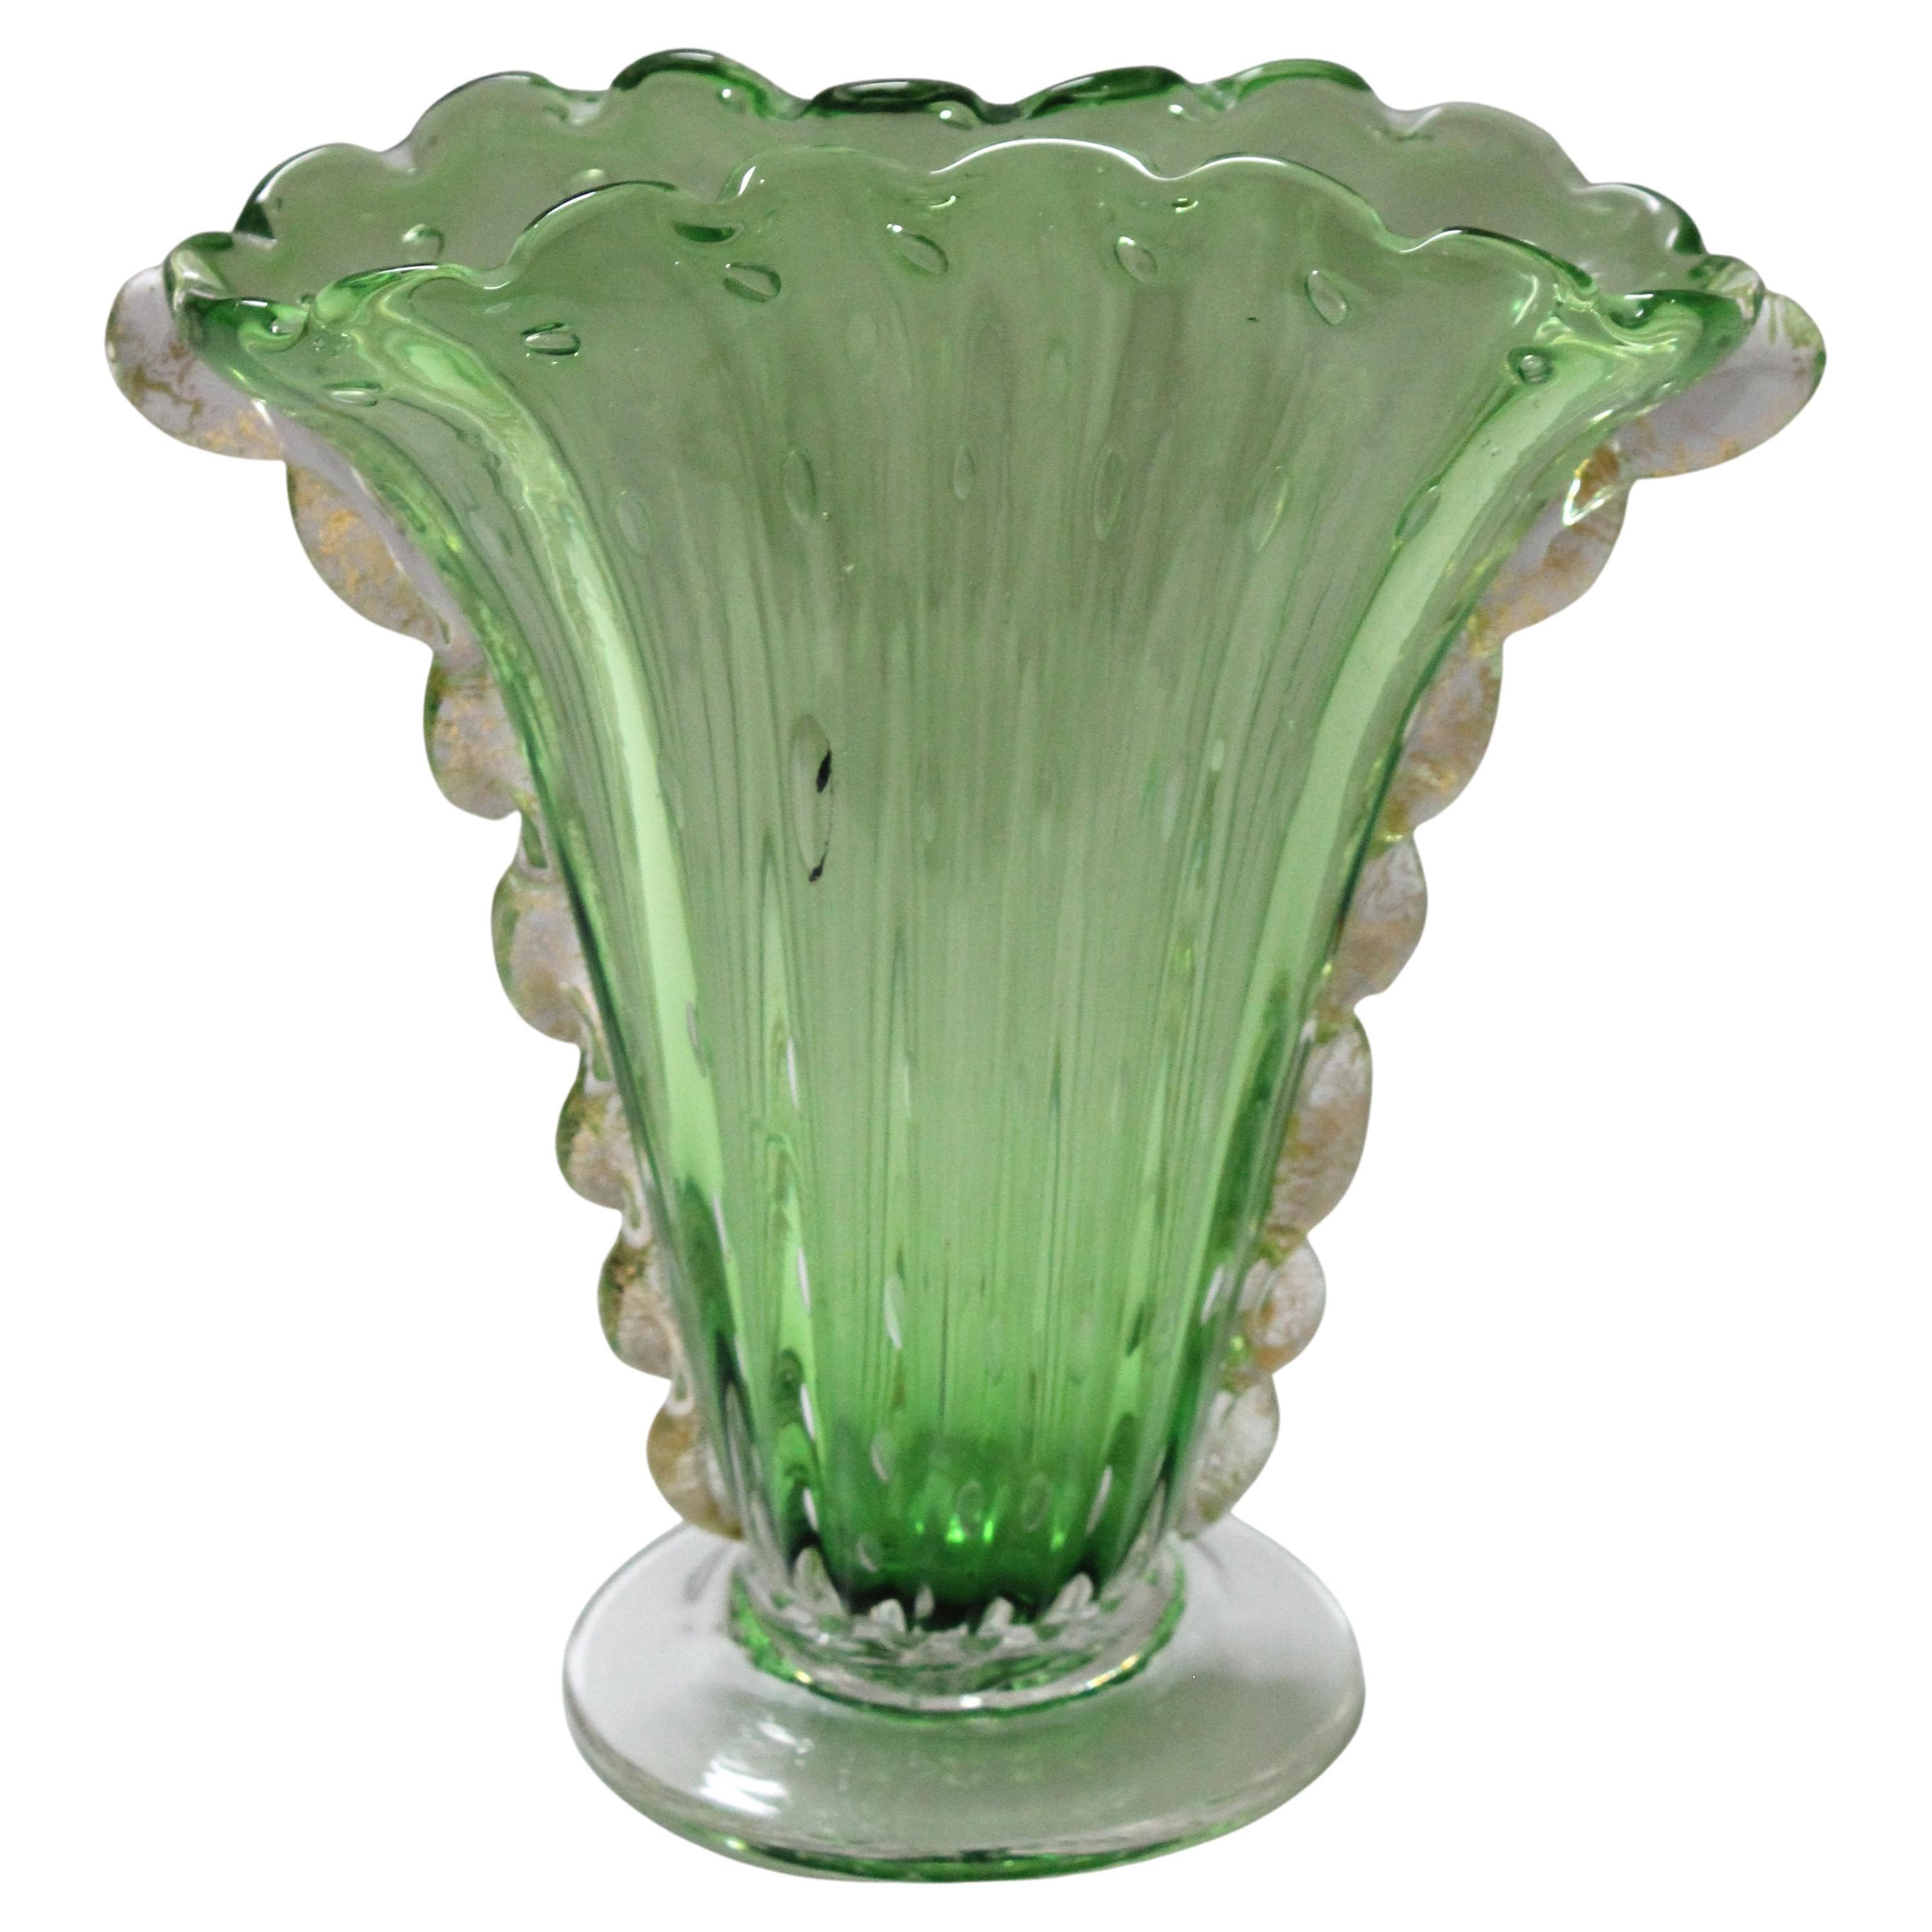 Vase Art Déco 1930 Barovier et Toso en verre de Murano vert clair avec des bulles allongées contrôlées et des inclusions d'or. 

Les bulles contrôlées près du sommet sont presque circulaires, mais s'allongent à mesure que le verre se rapproche de la